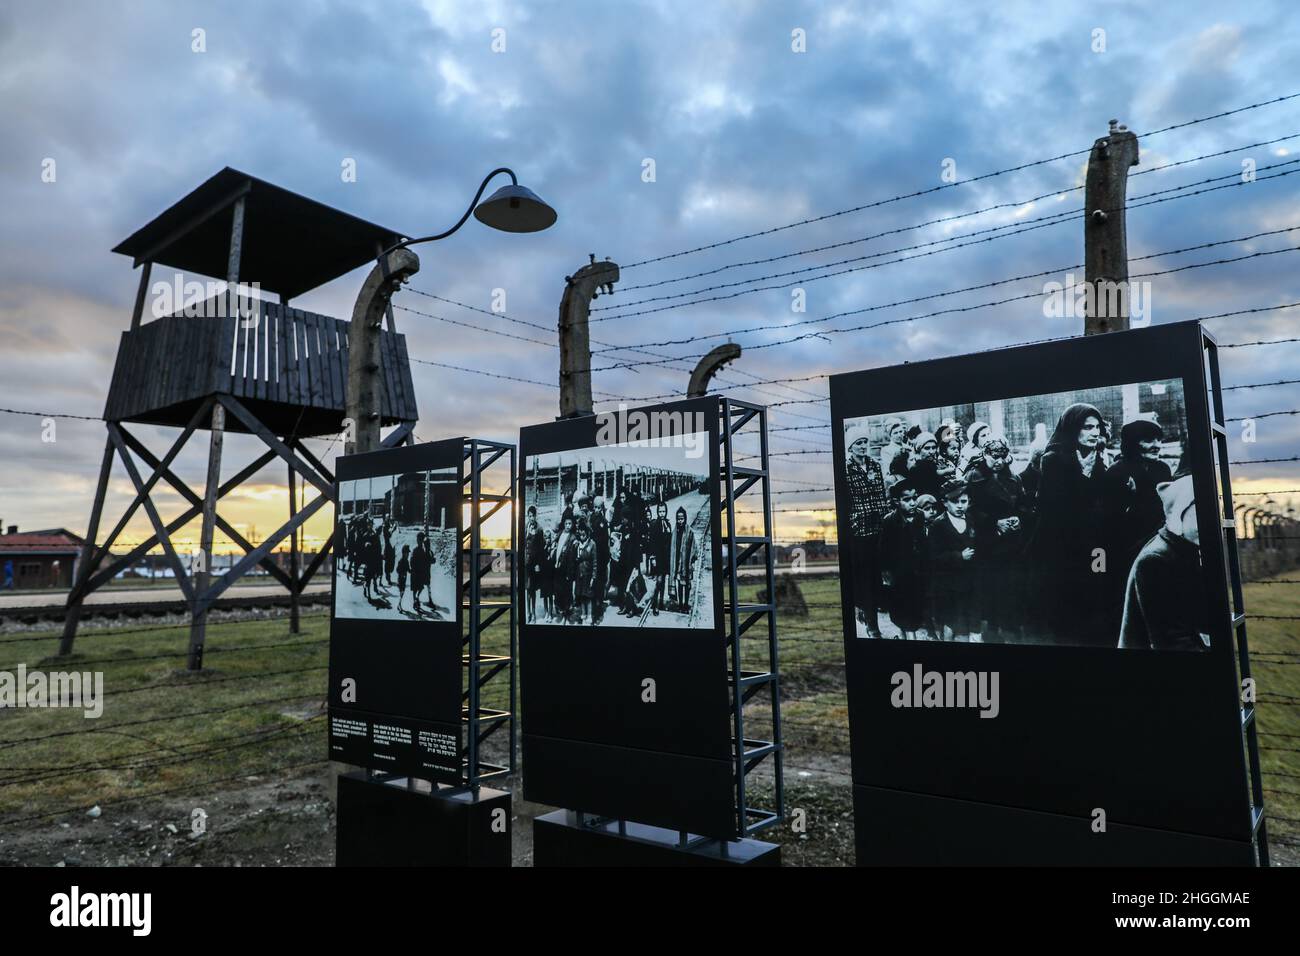 Immagini storiche sono viste all'ex campo di concentramento e sterminio nazista-tedesco Auschwitz II-Birkenau a Oswiecim, in Polonia, il 3 gennaio 2022. Foto Stock